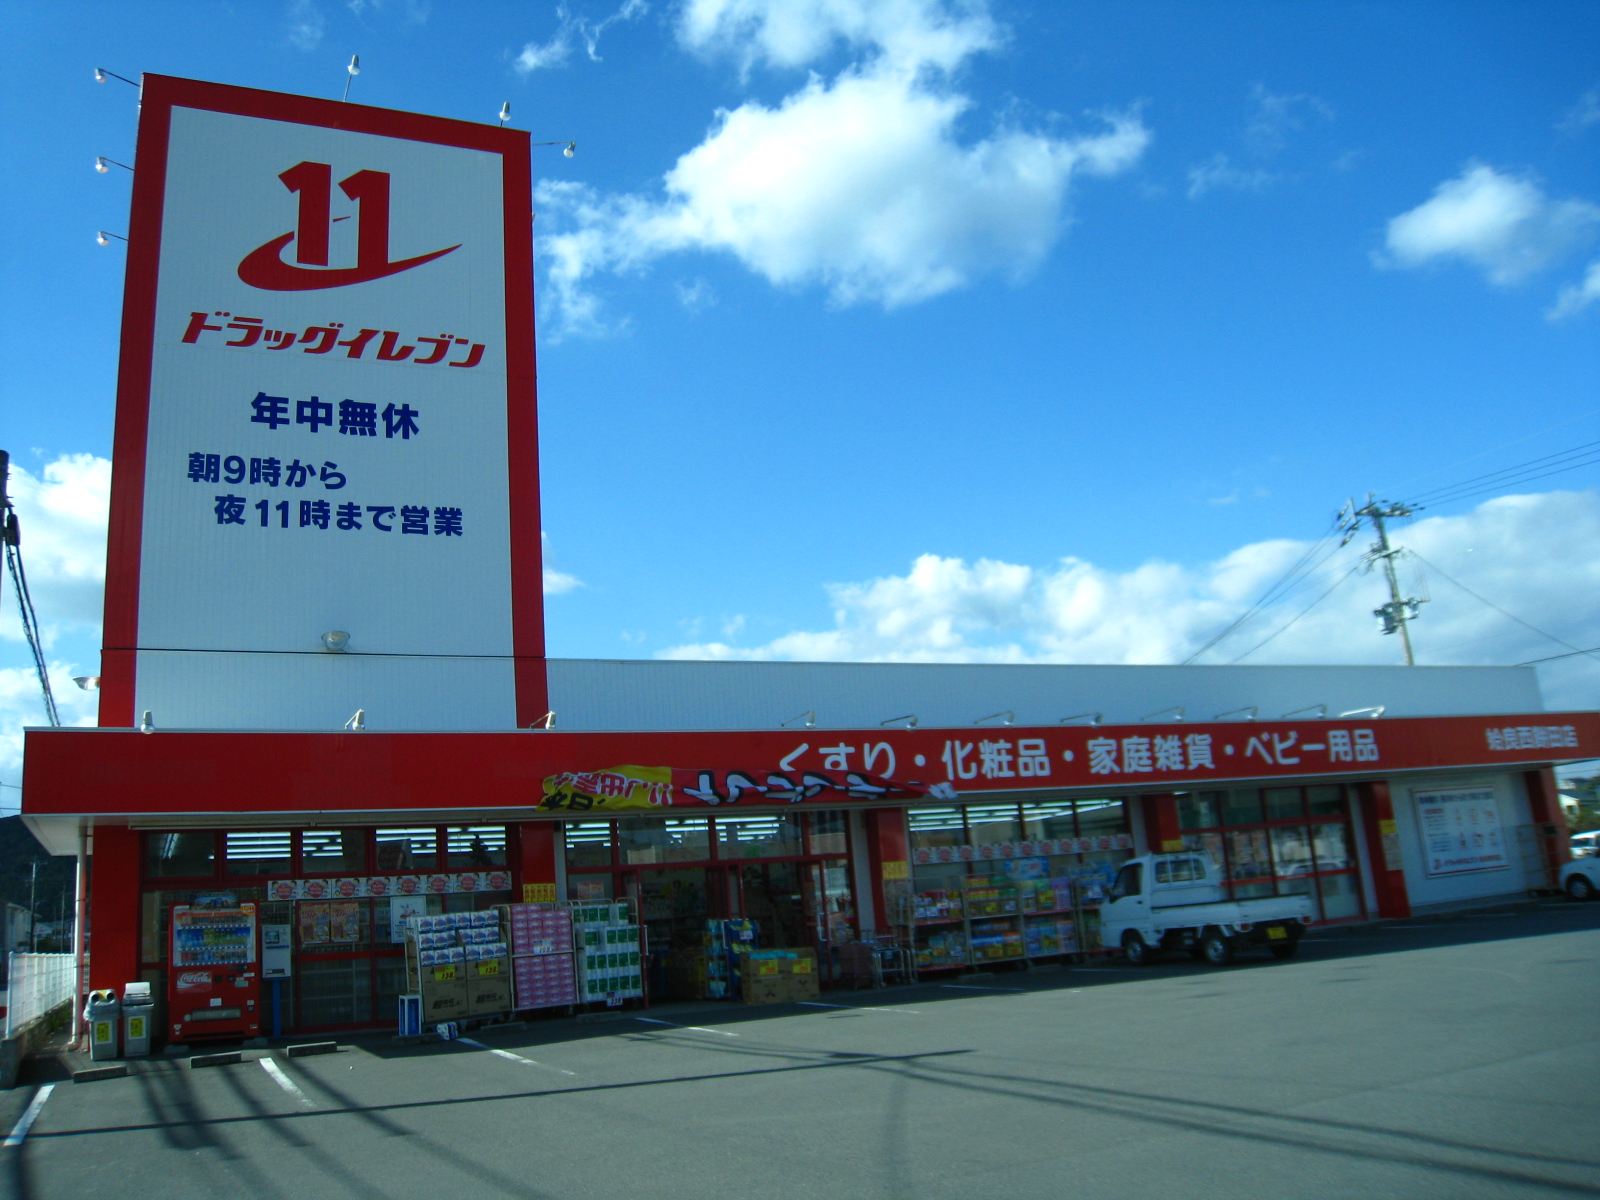 Dorakkusutoa. Eleven Aira Nishimochida shop 167m until (drugstore)